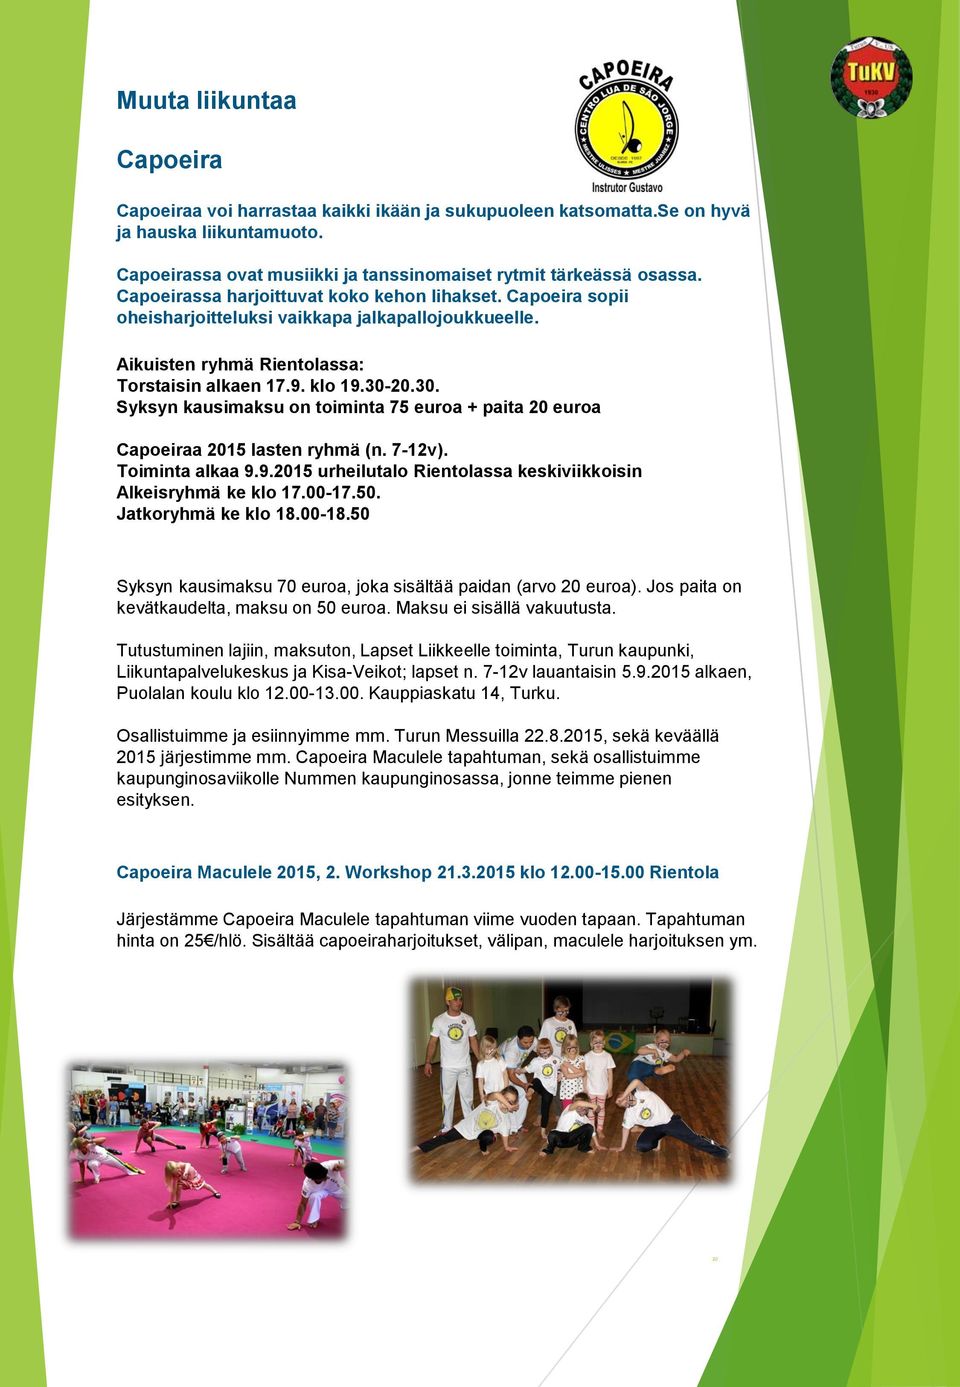 20.30. Syksyn kausimaksu on toiminta 75 euroa + paita 20 euroa Capoeiraa 2015 lasten ryhmä (n. 7-12v). Toiminta alkaa 9.9.2015 urheilutalo Rientolassa keskiviikkoisin Alkeisryhmä ke klo 17.00-17.50.